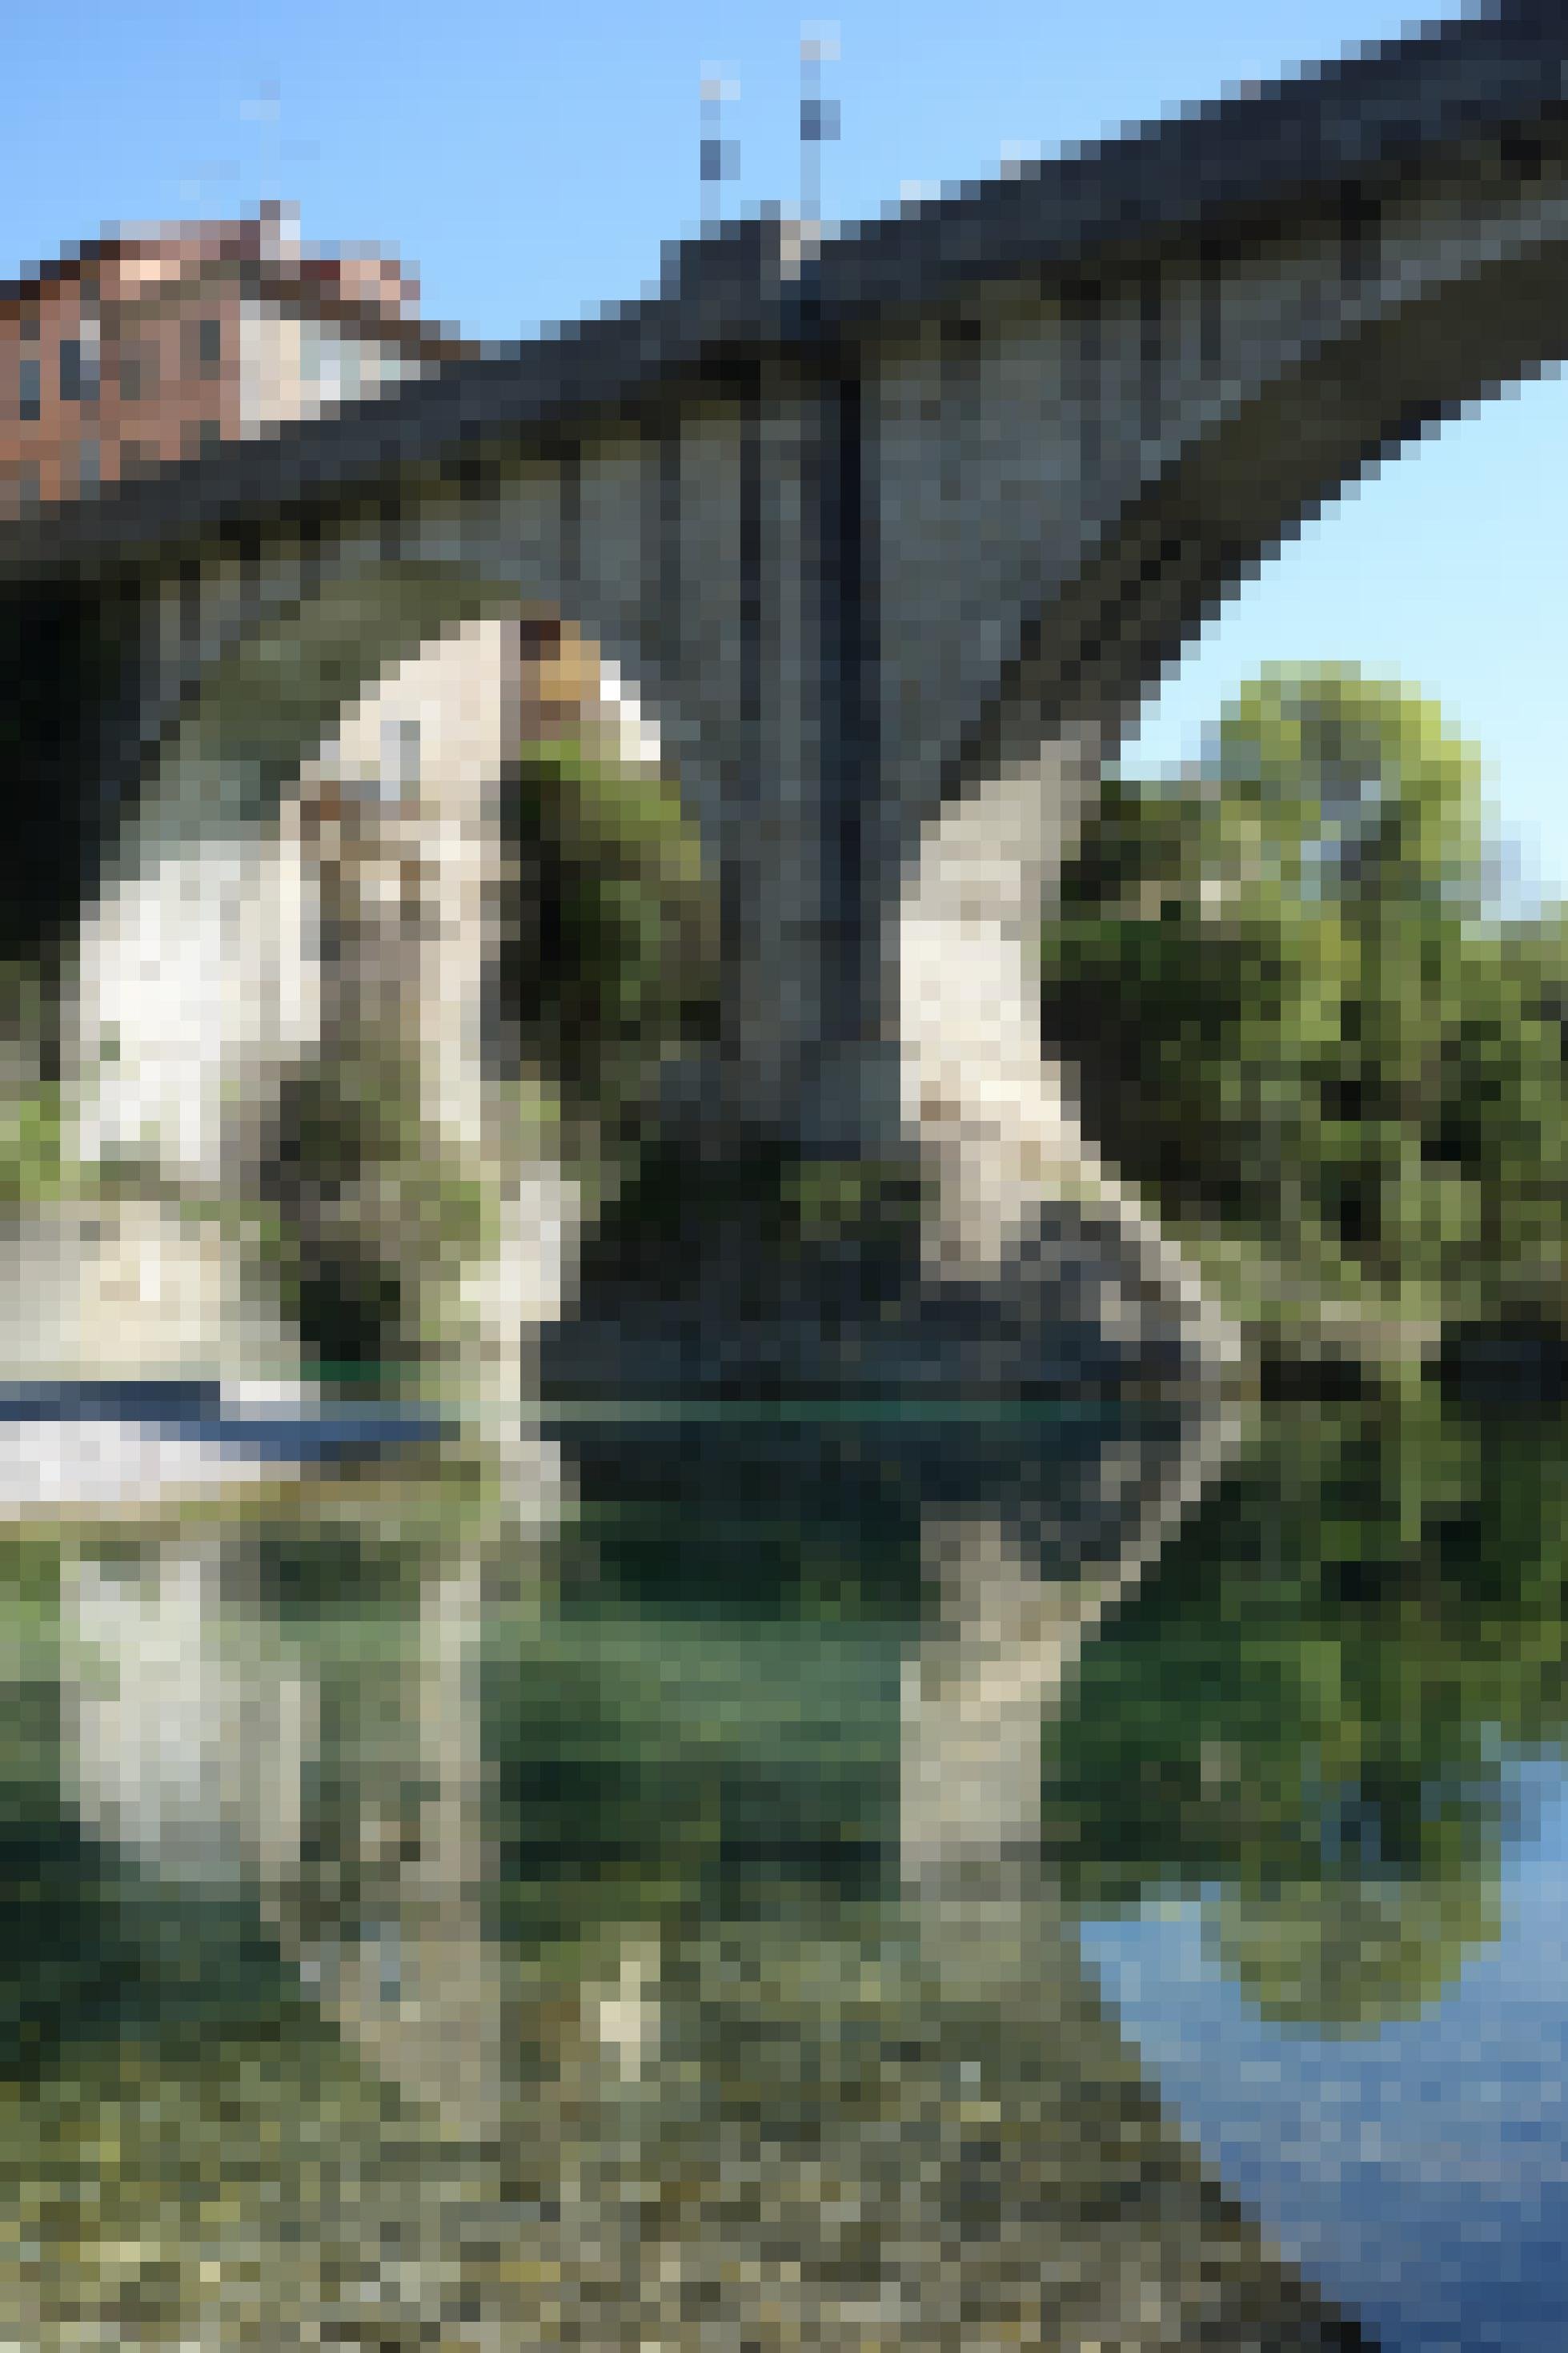 Mächtige alte Brücke aus Stein, darunter ein ganz klarer grüner Fluss, links oben an der Brücke ein altes italienisches Haus.